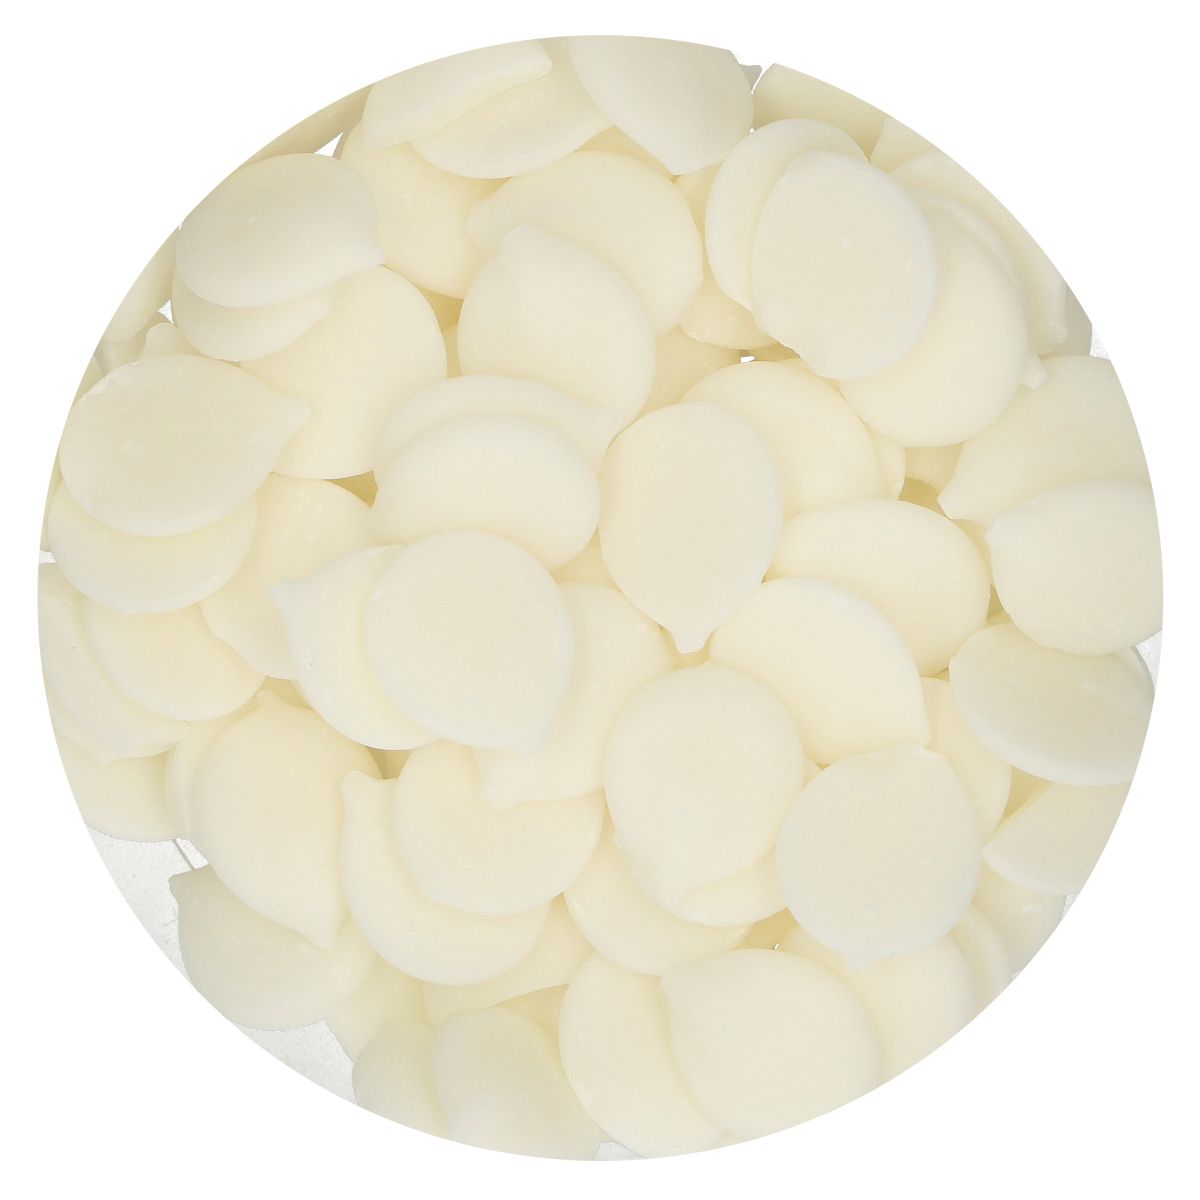 Imagen de producto: Deco Melts blanco natural - 1 kg